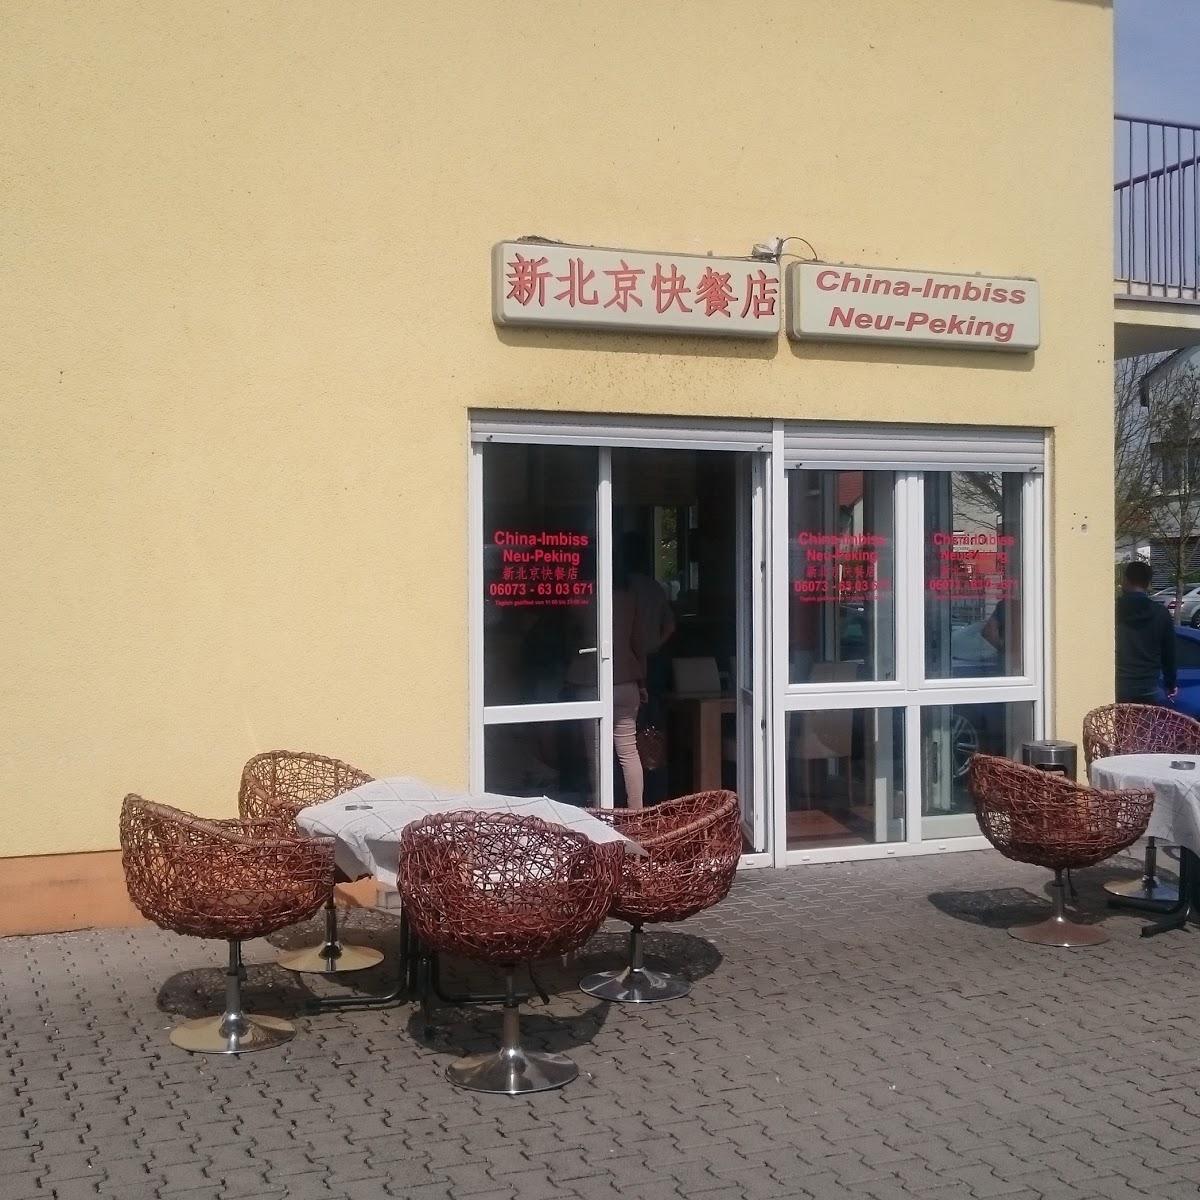 Restaurant "China Imbiss Neu-Peking" in Babenhausen